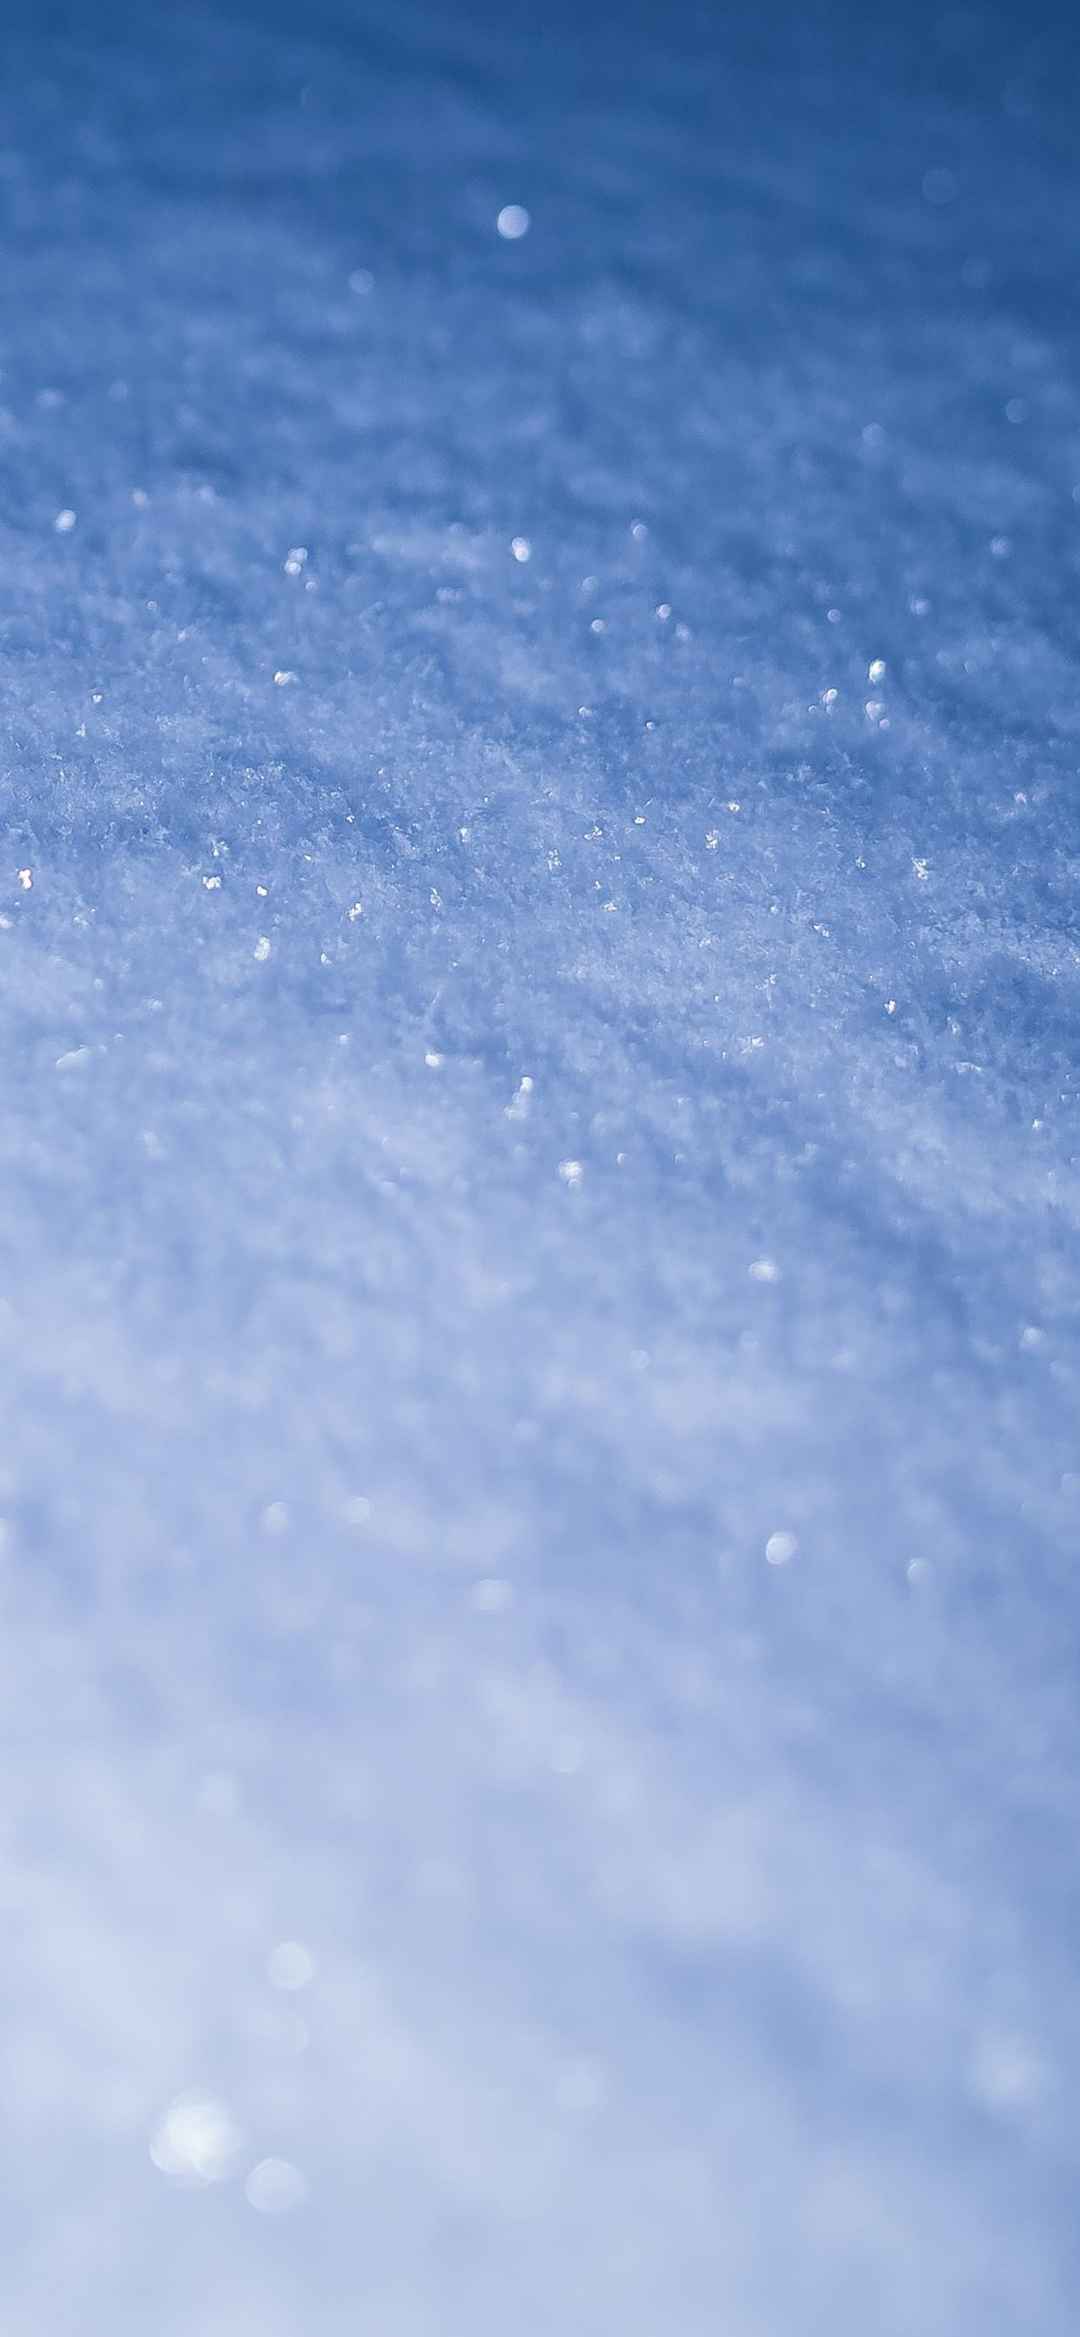 冰雪世界风景手机壁纸-